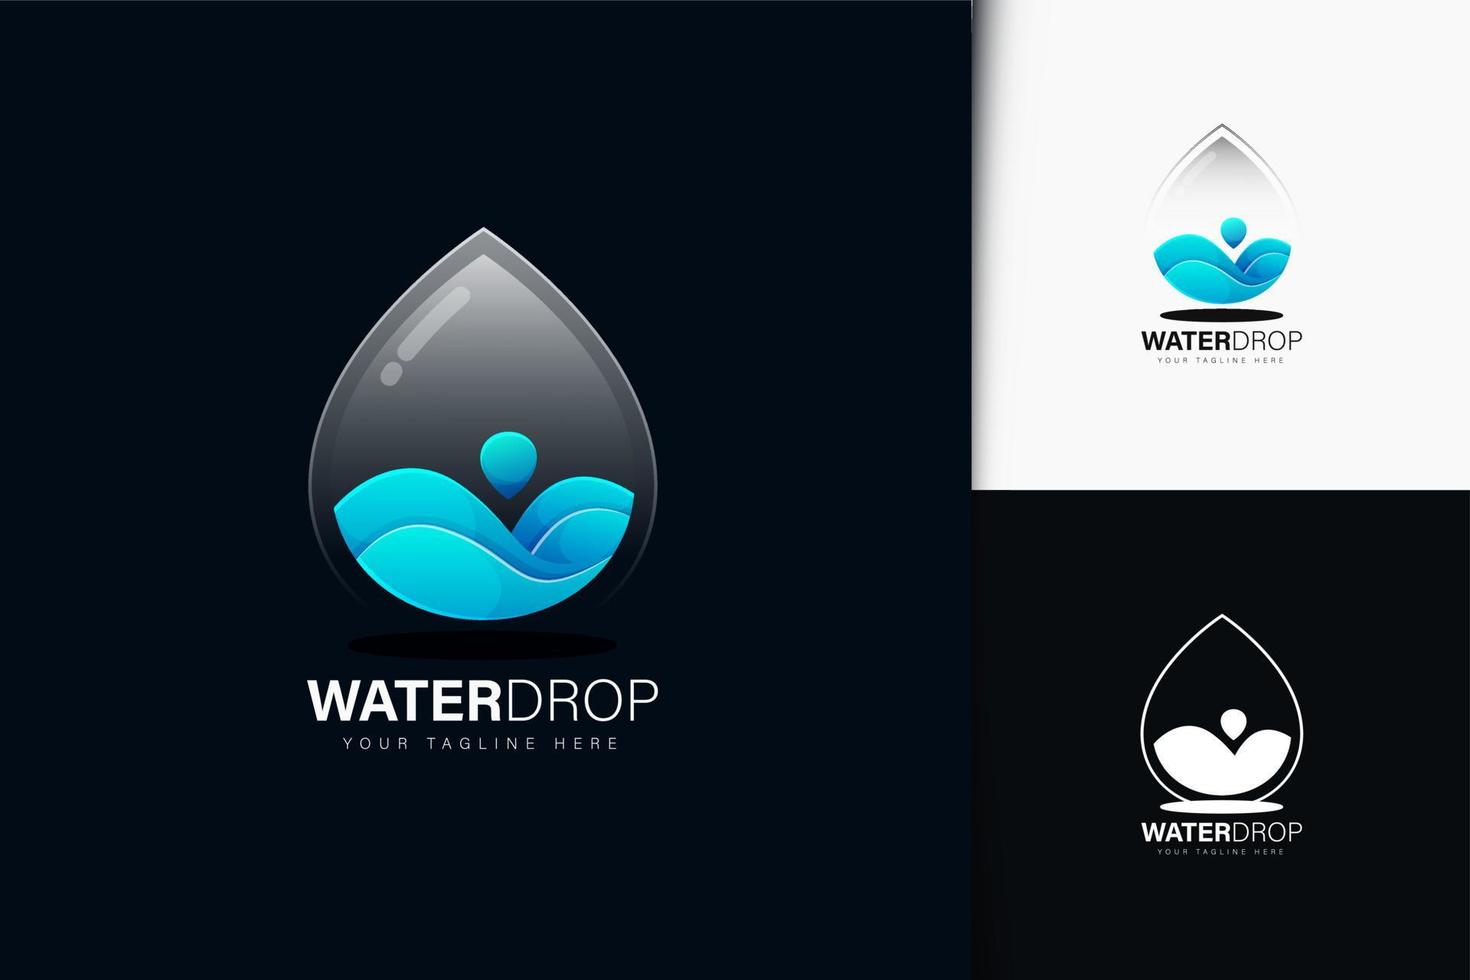 Water drop logo design with gradient vector